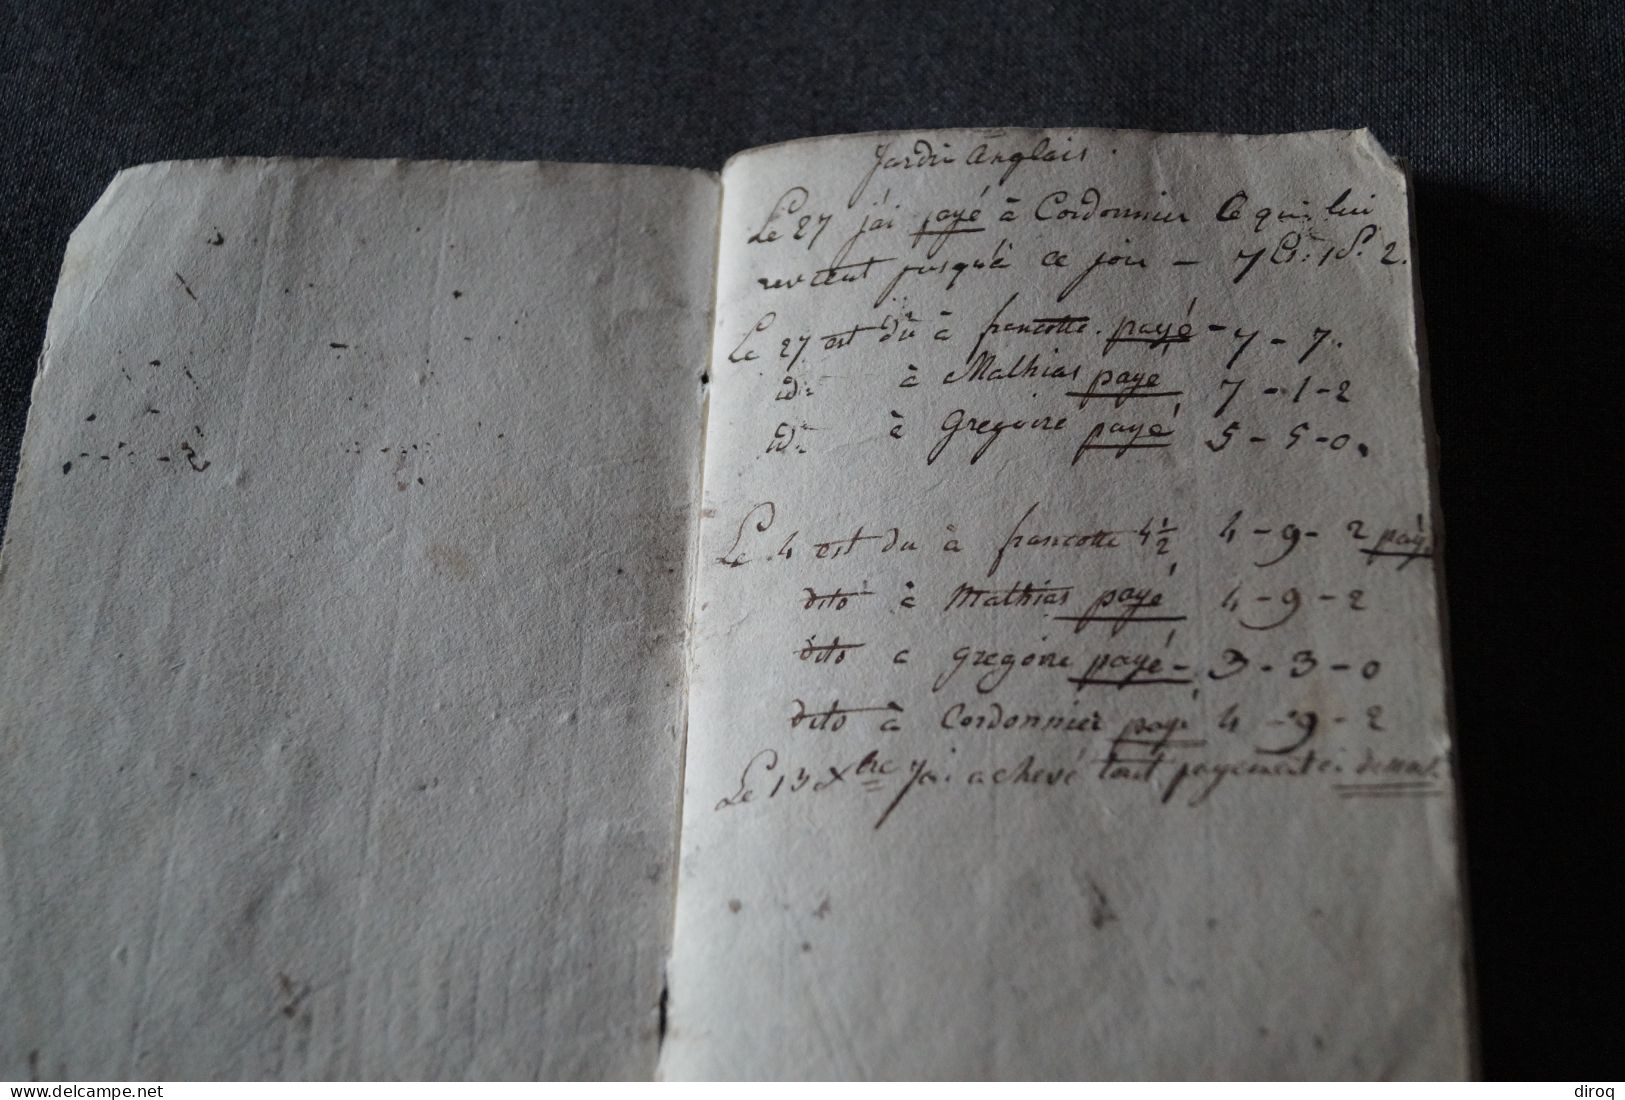 RARE unique manuscrit 1812,Oeuvres de menuiserie,42 pages, 16 Cm. sur 10 Cm.